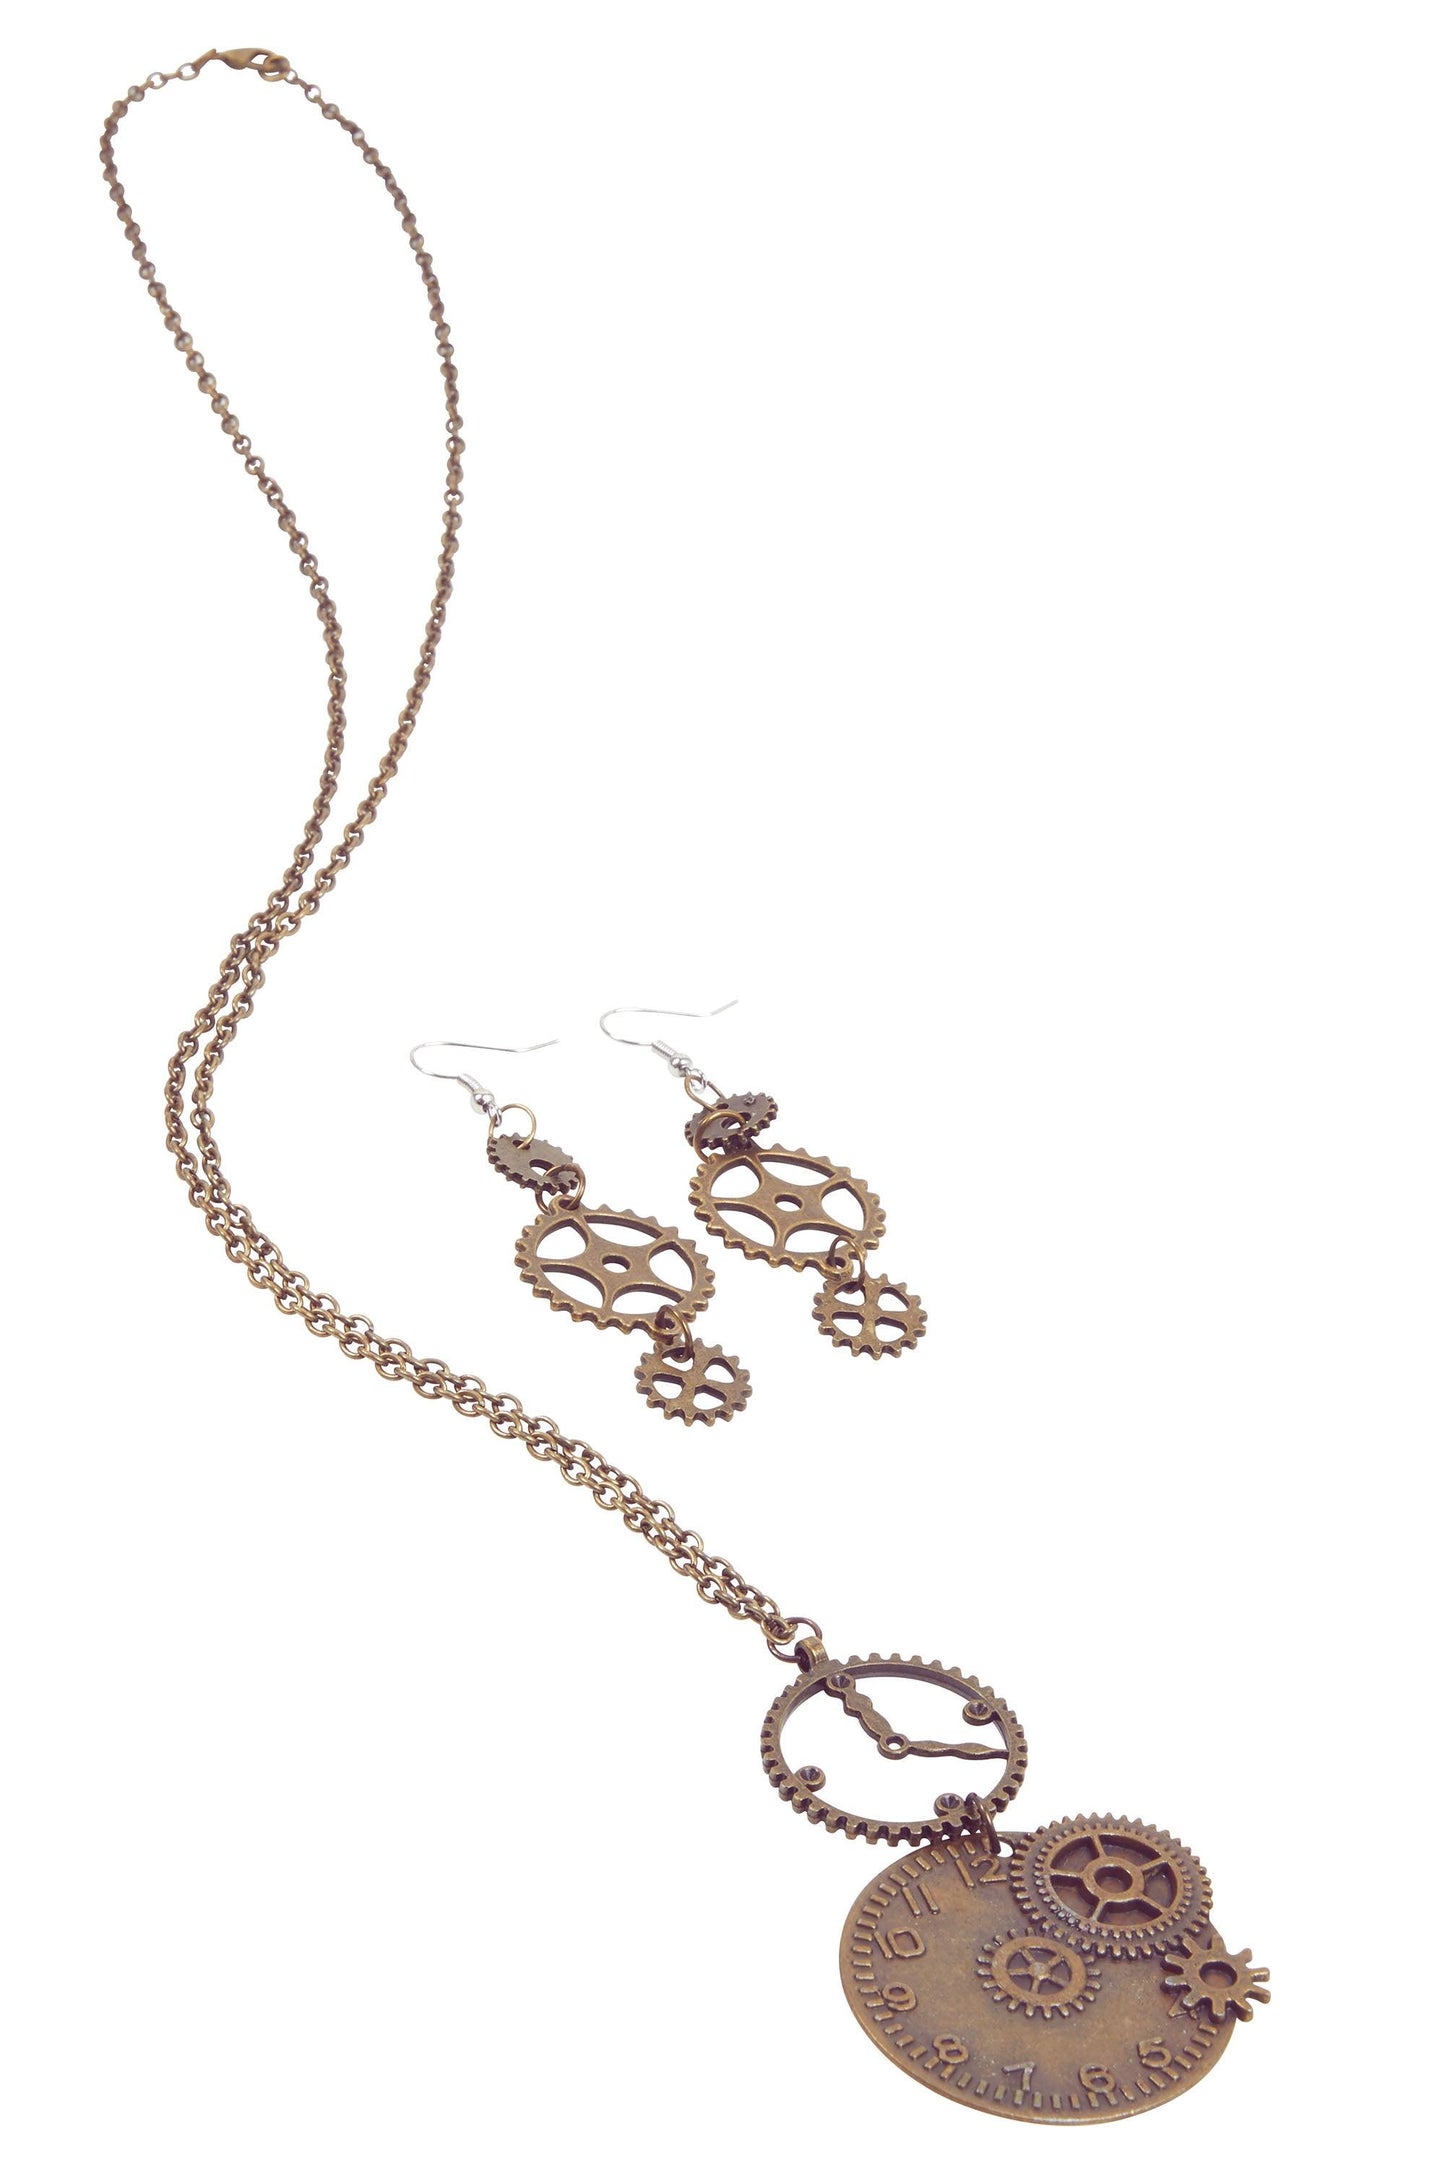 Steampunk Clock Necklace + Gear Earrings - Labreeze